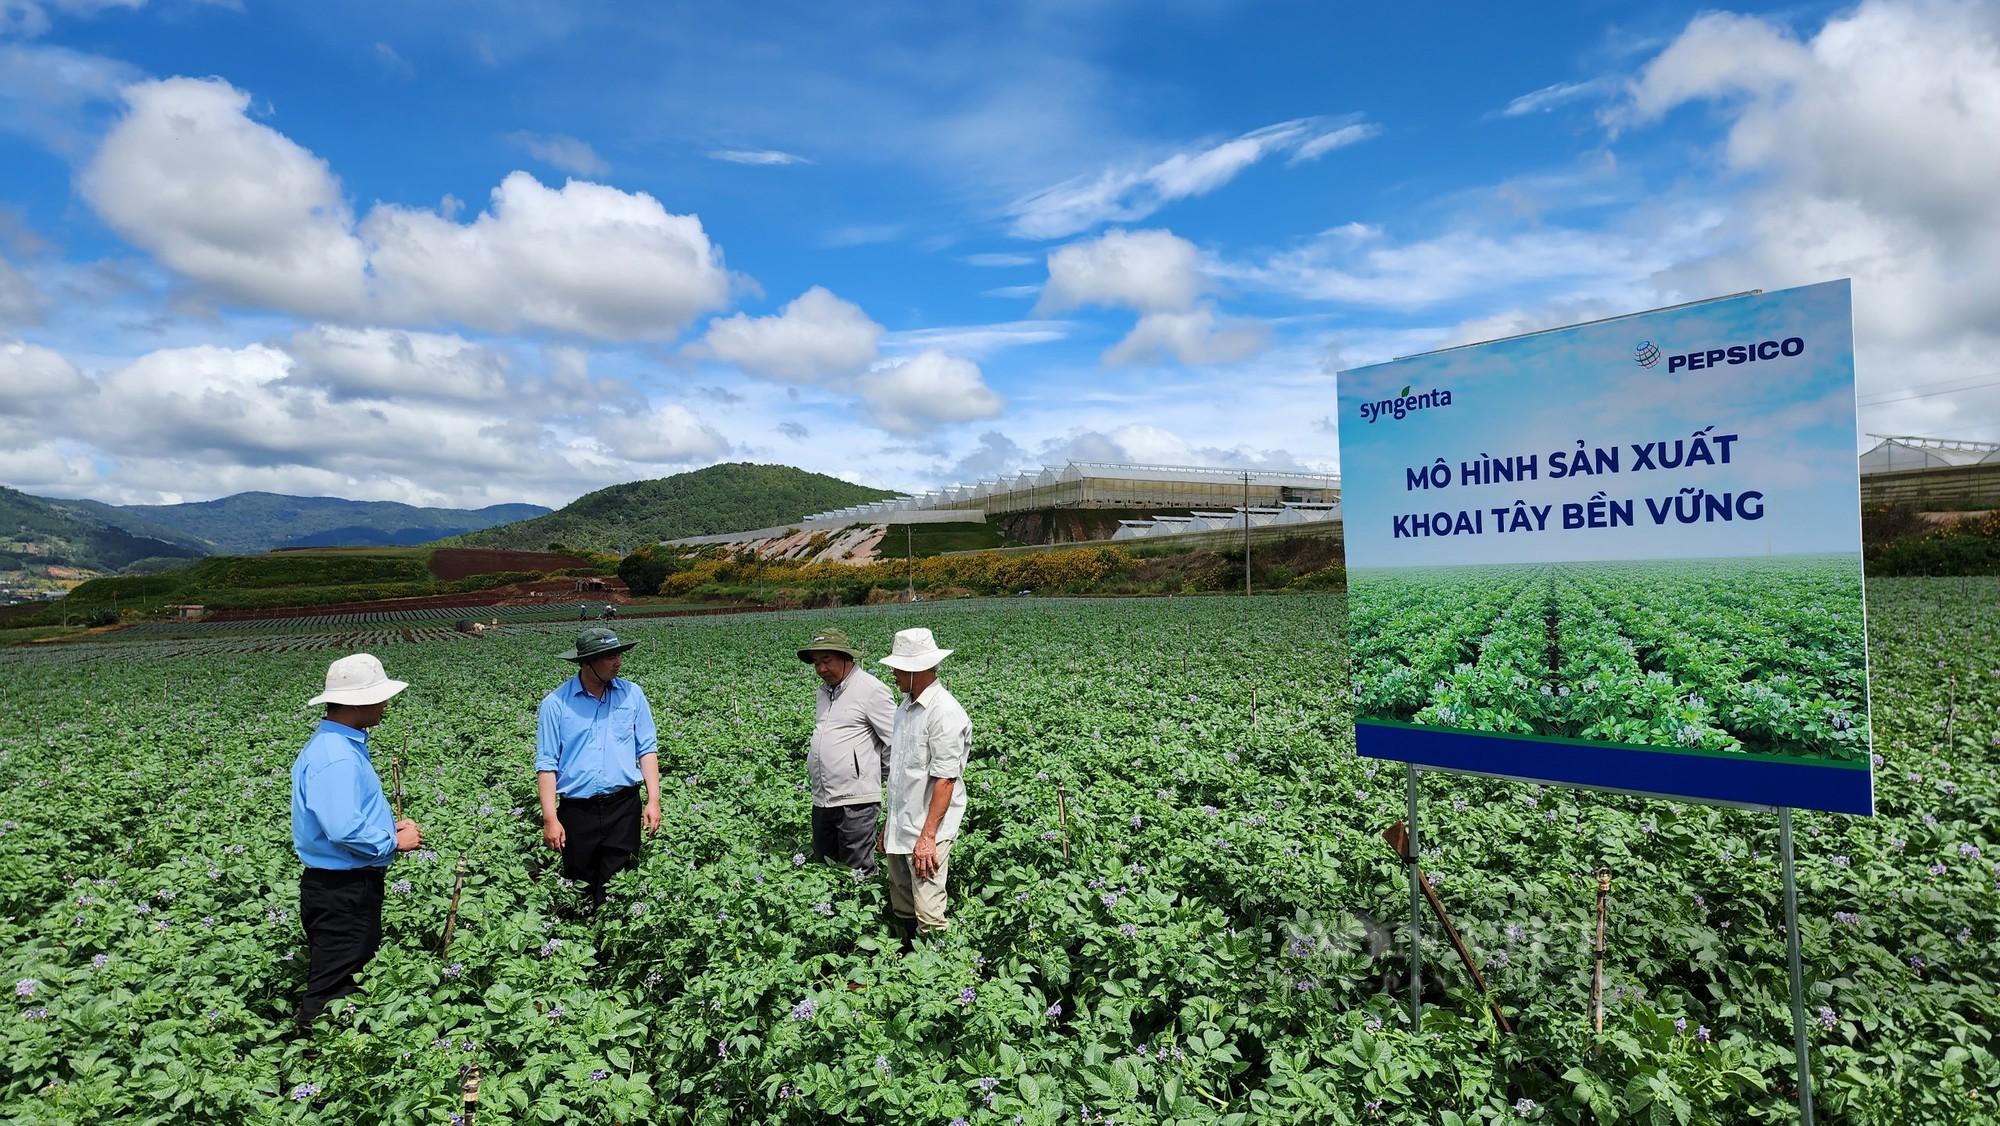 Liên kết trồng khoai tây với Syngenta và Pepsico, nông dân thu lãi cả trăm triệu đồng - Ảnh 1.